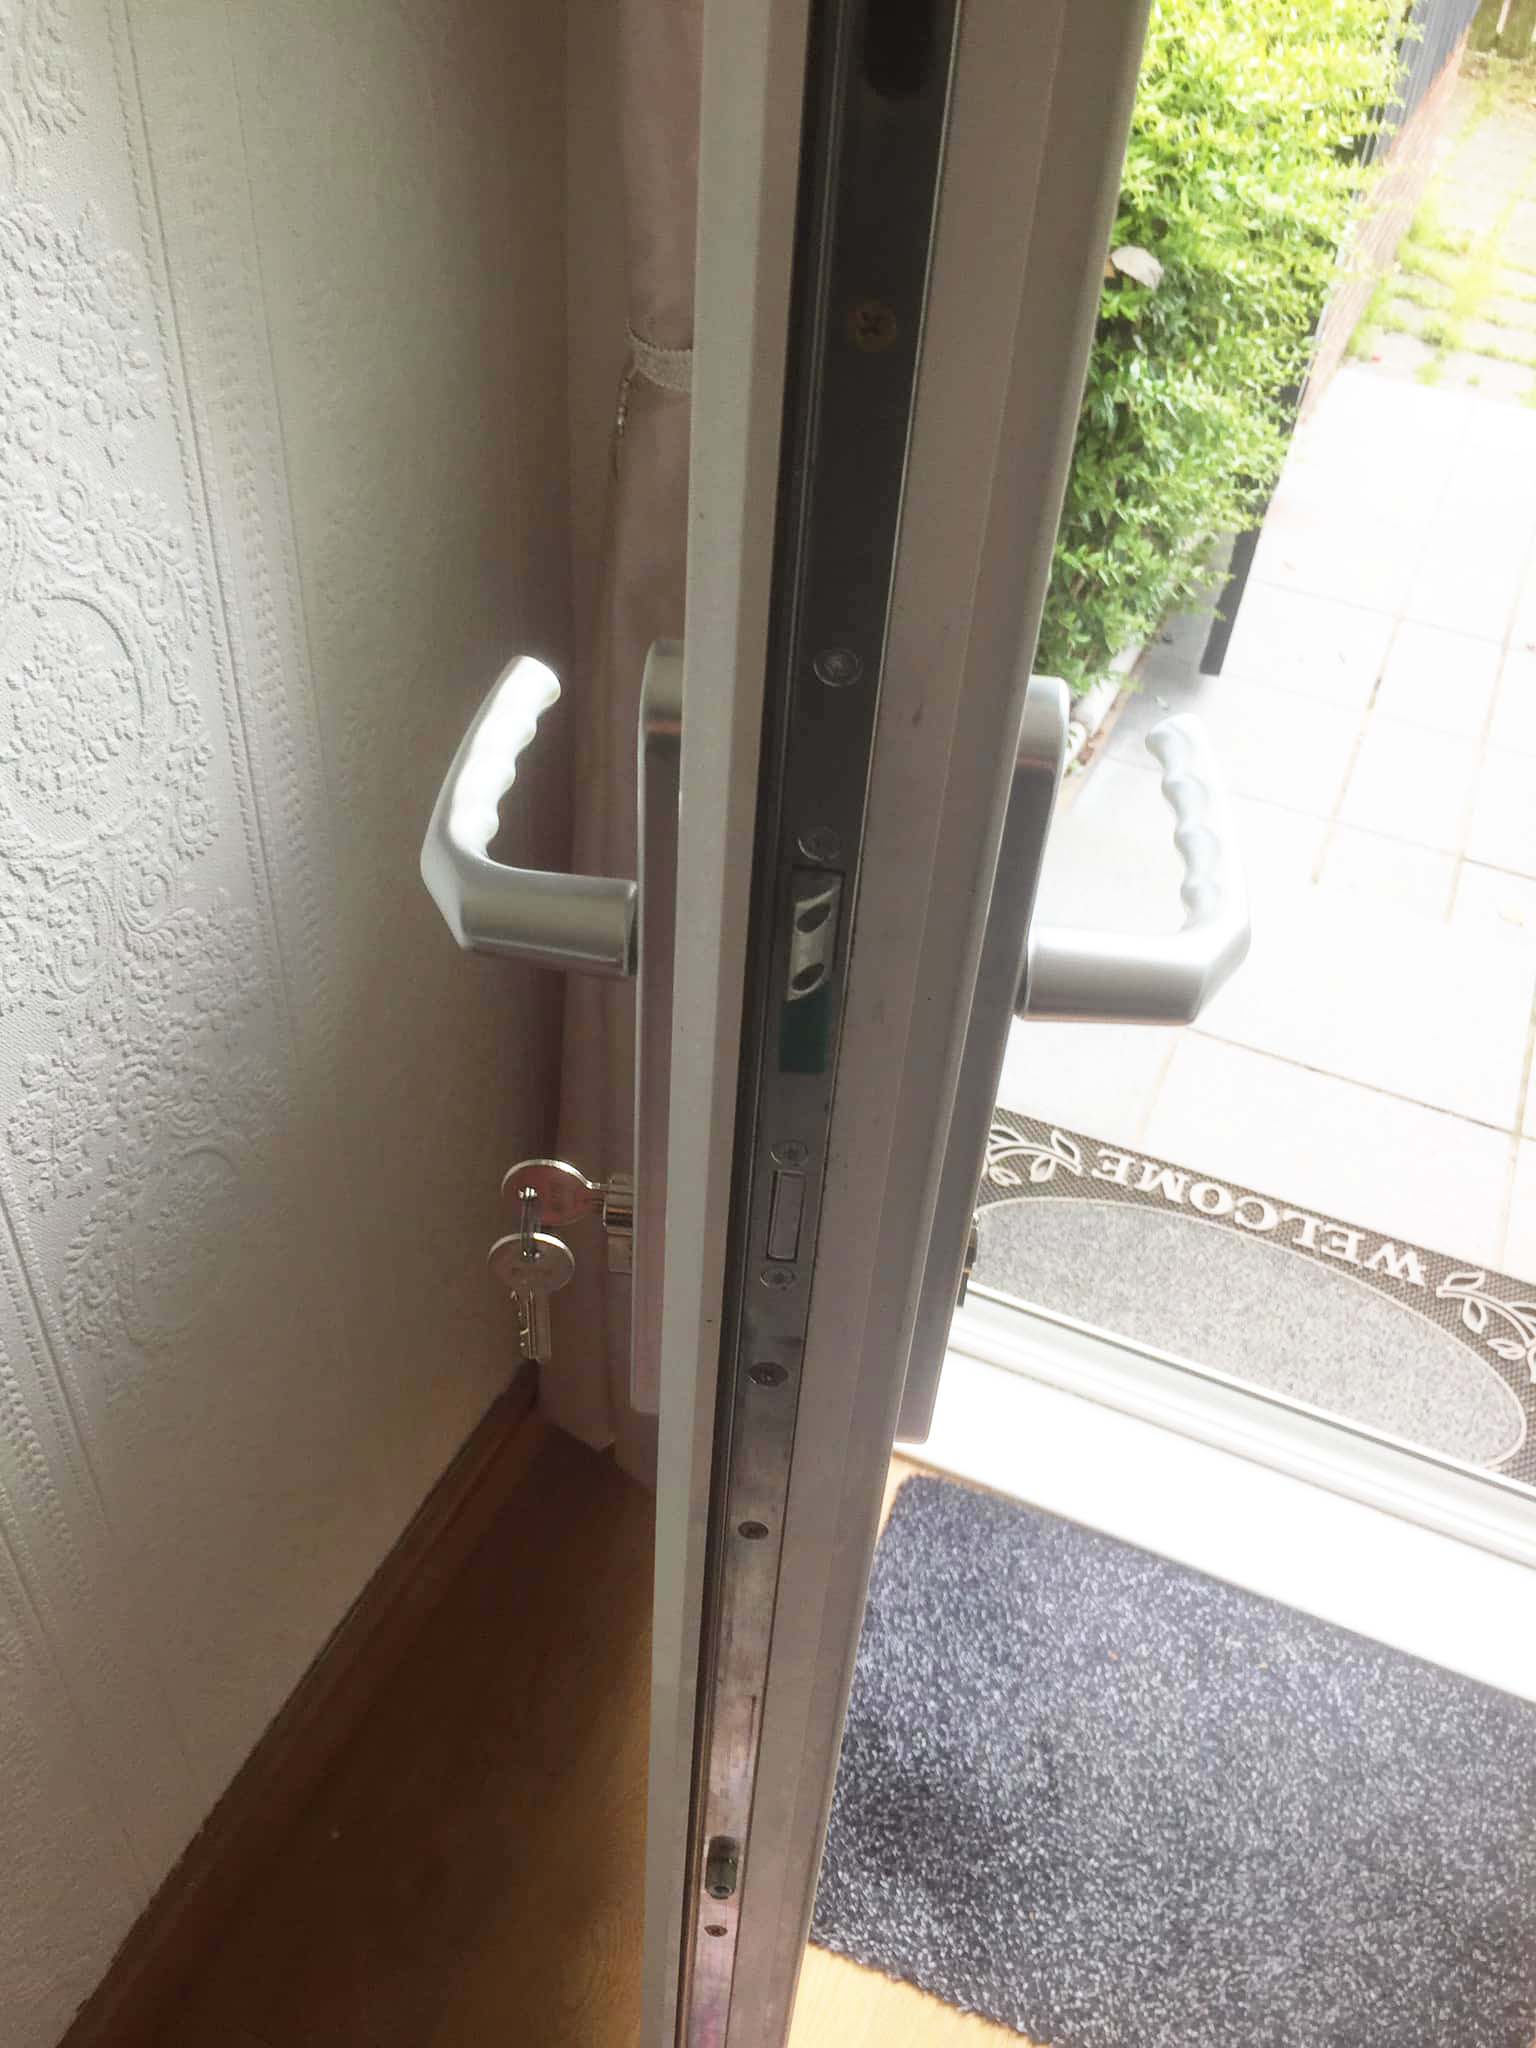 Upvc door lock fixed on front door